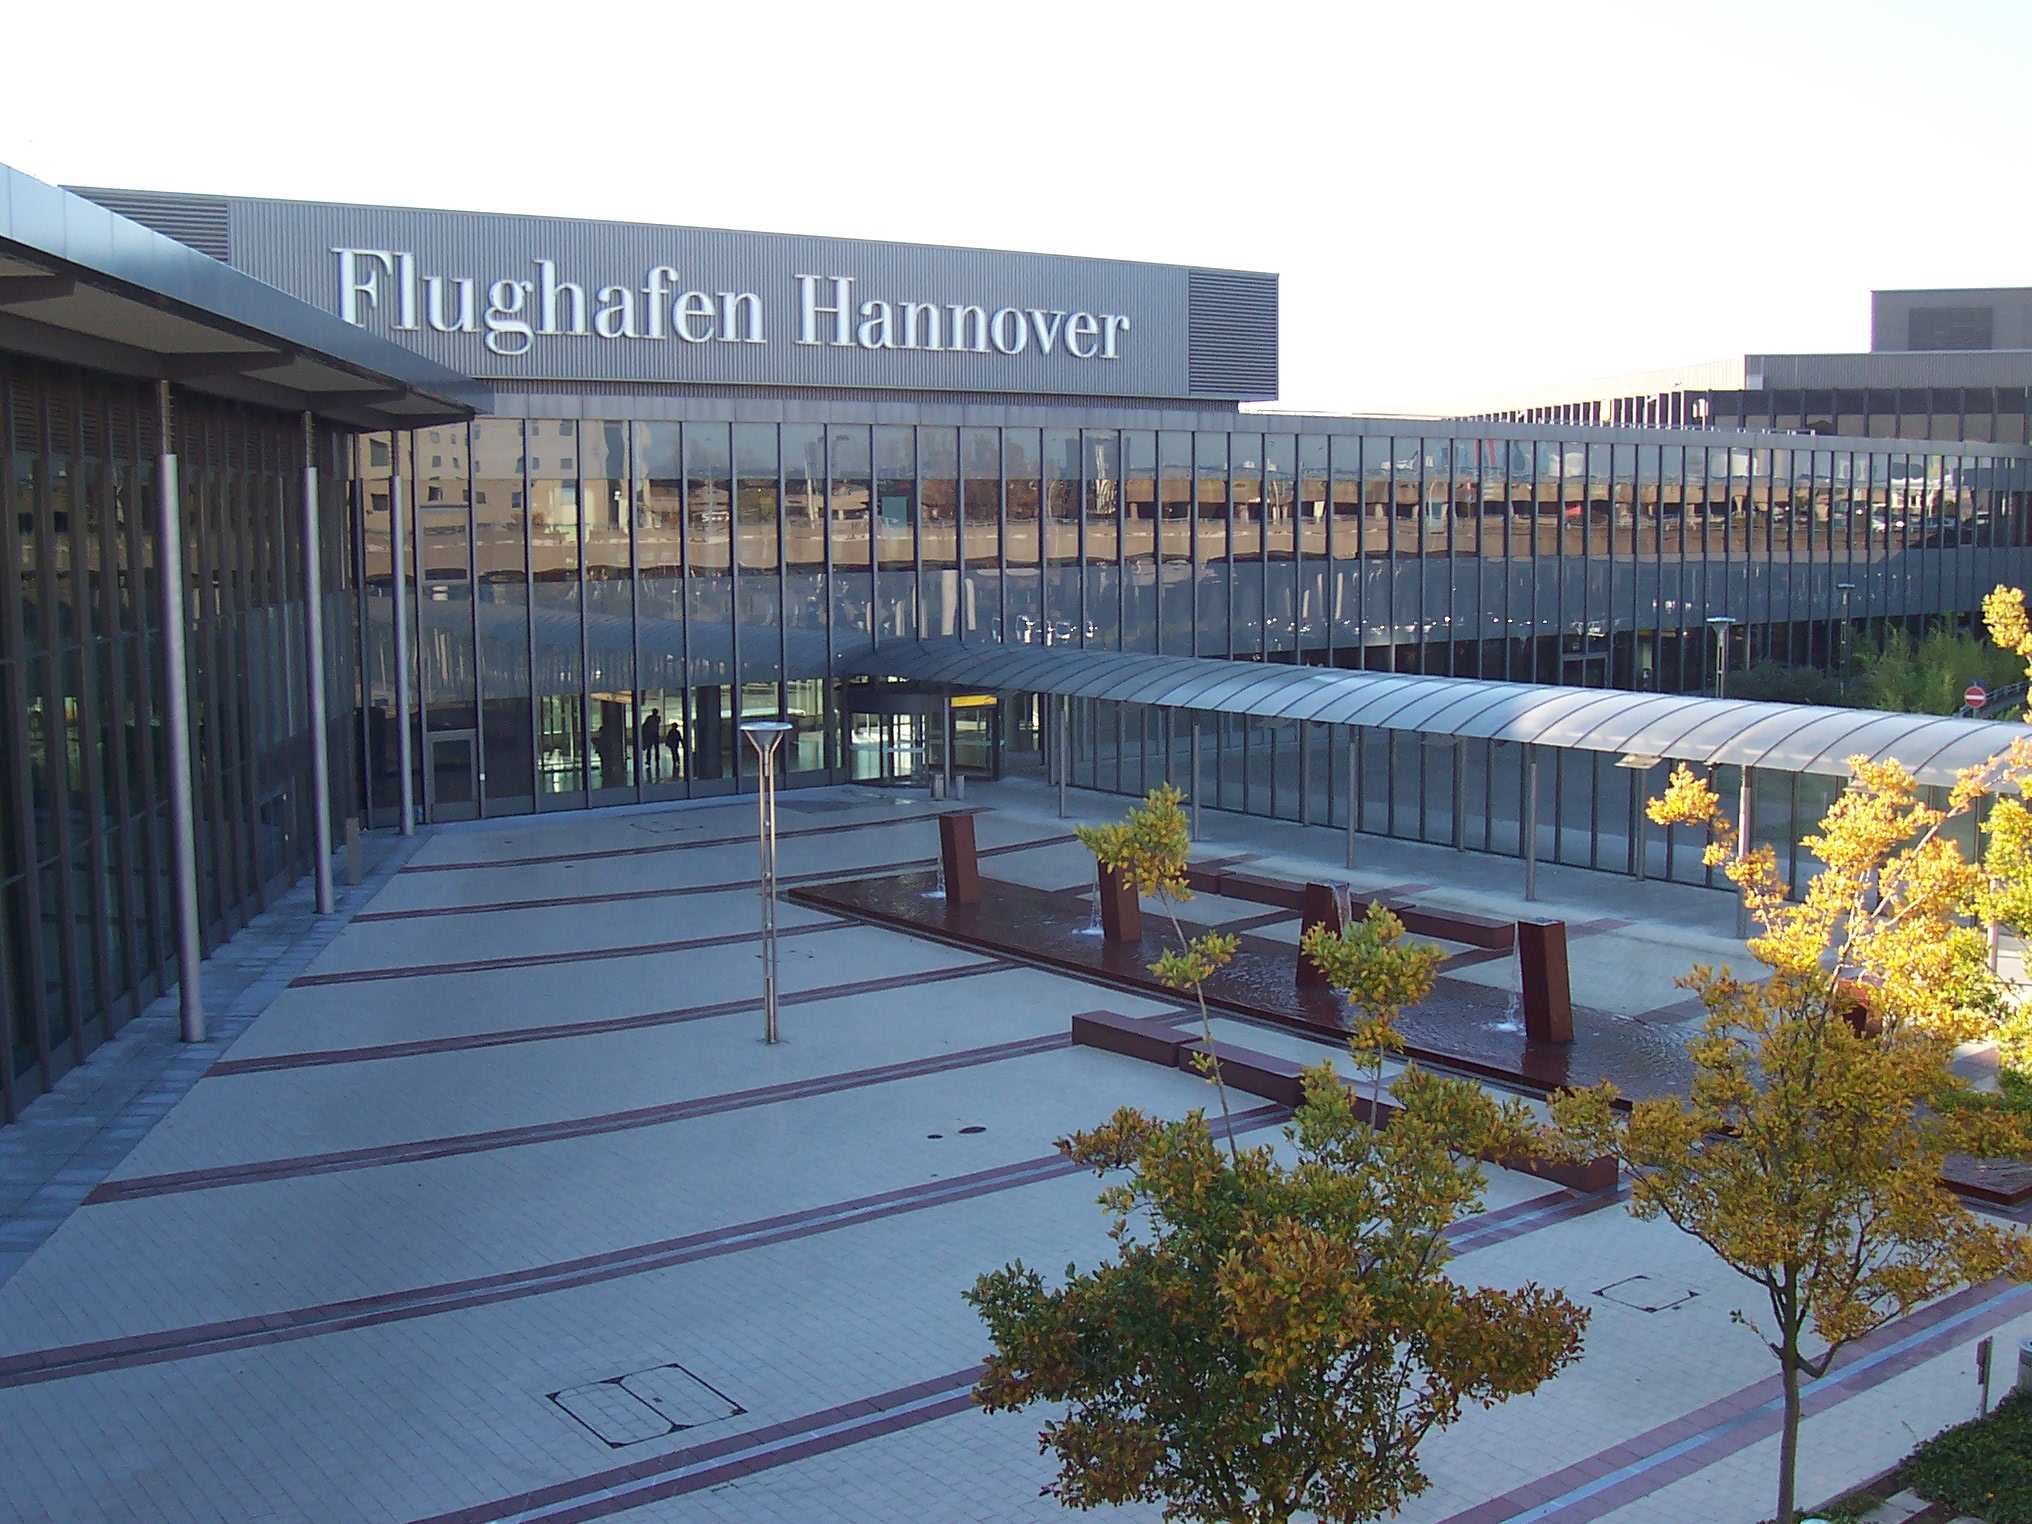 Flughafen Hannover-Langenhagen (FHLG); Image courtesy of Albion, Creative Commons